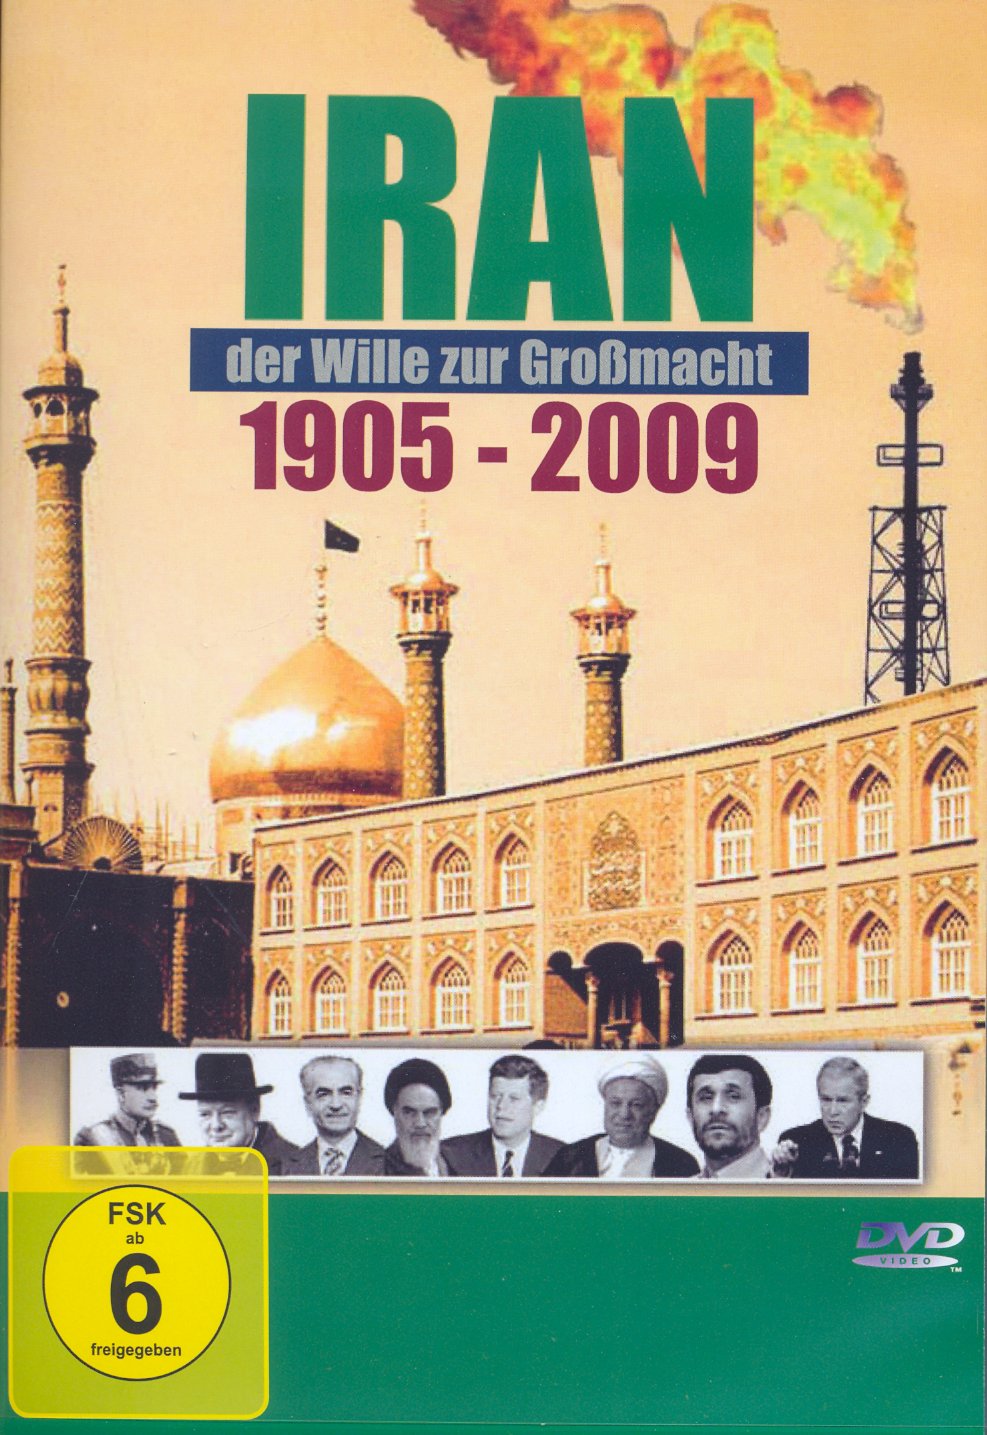 IRAN - DER WILLE ZUR GROSSMACHT DVD (SÄKULAR) - (1905 - 2009)